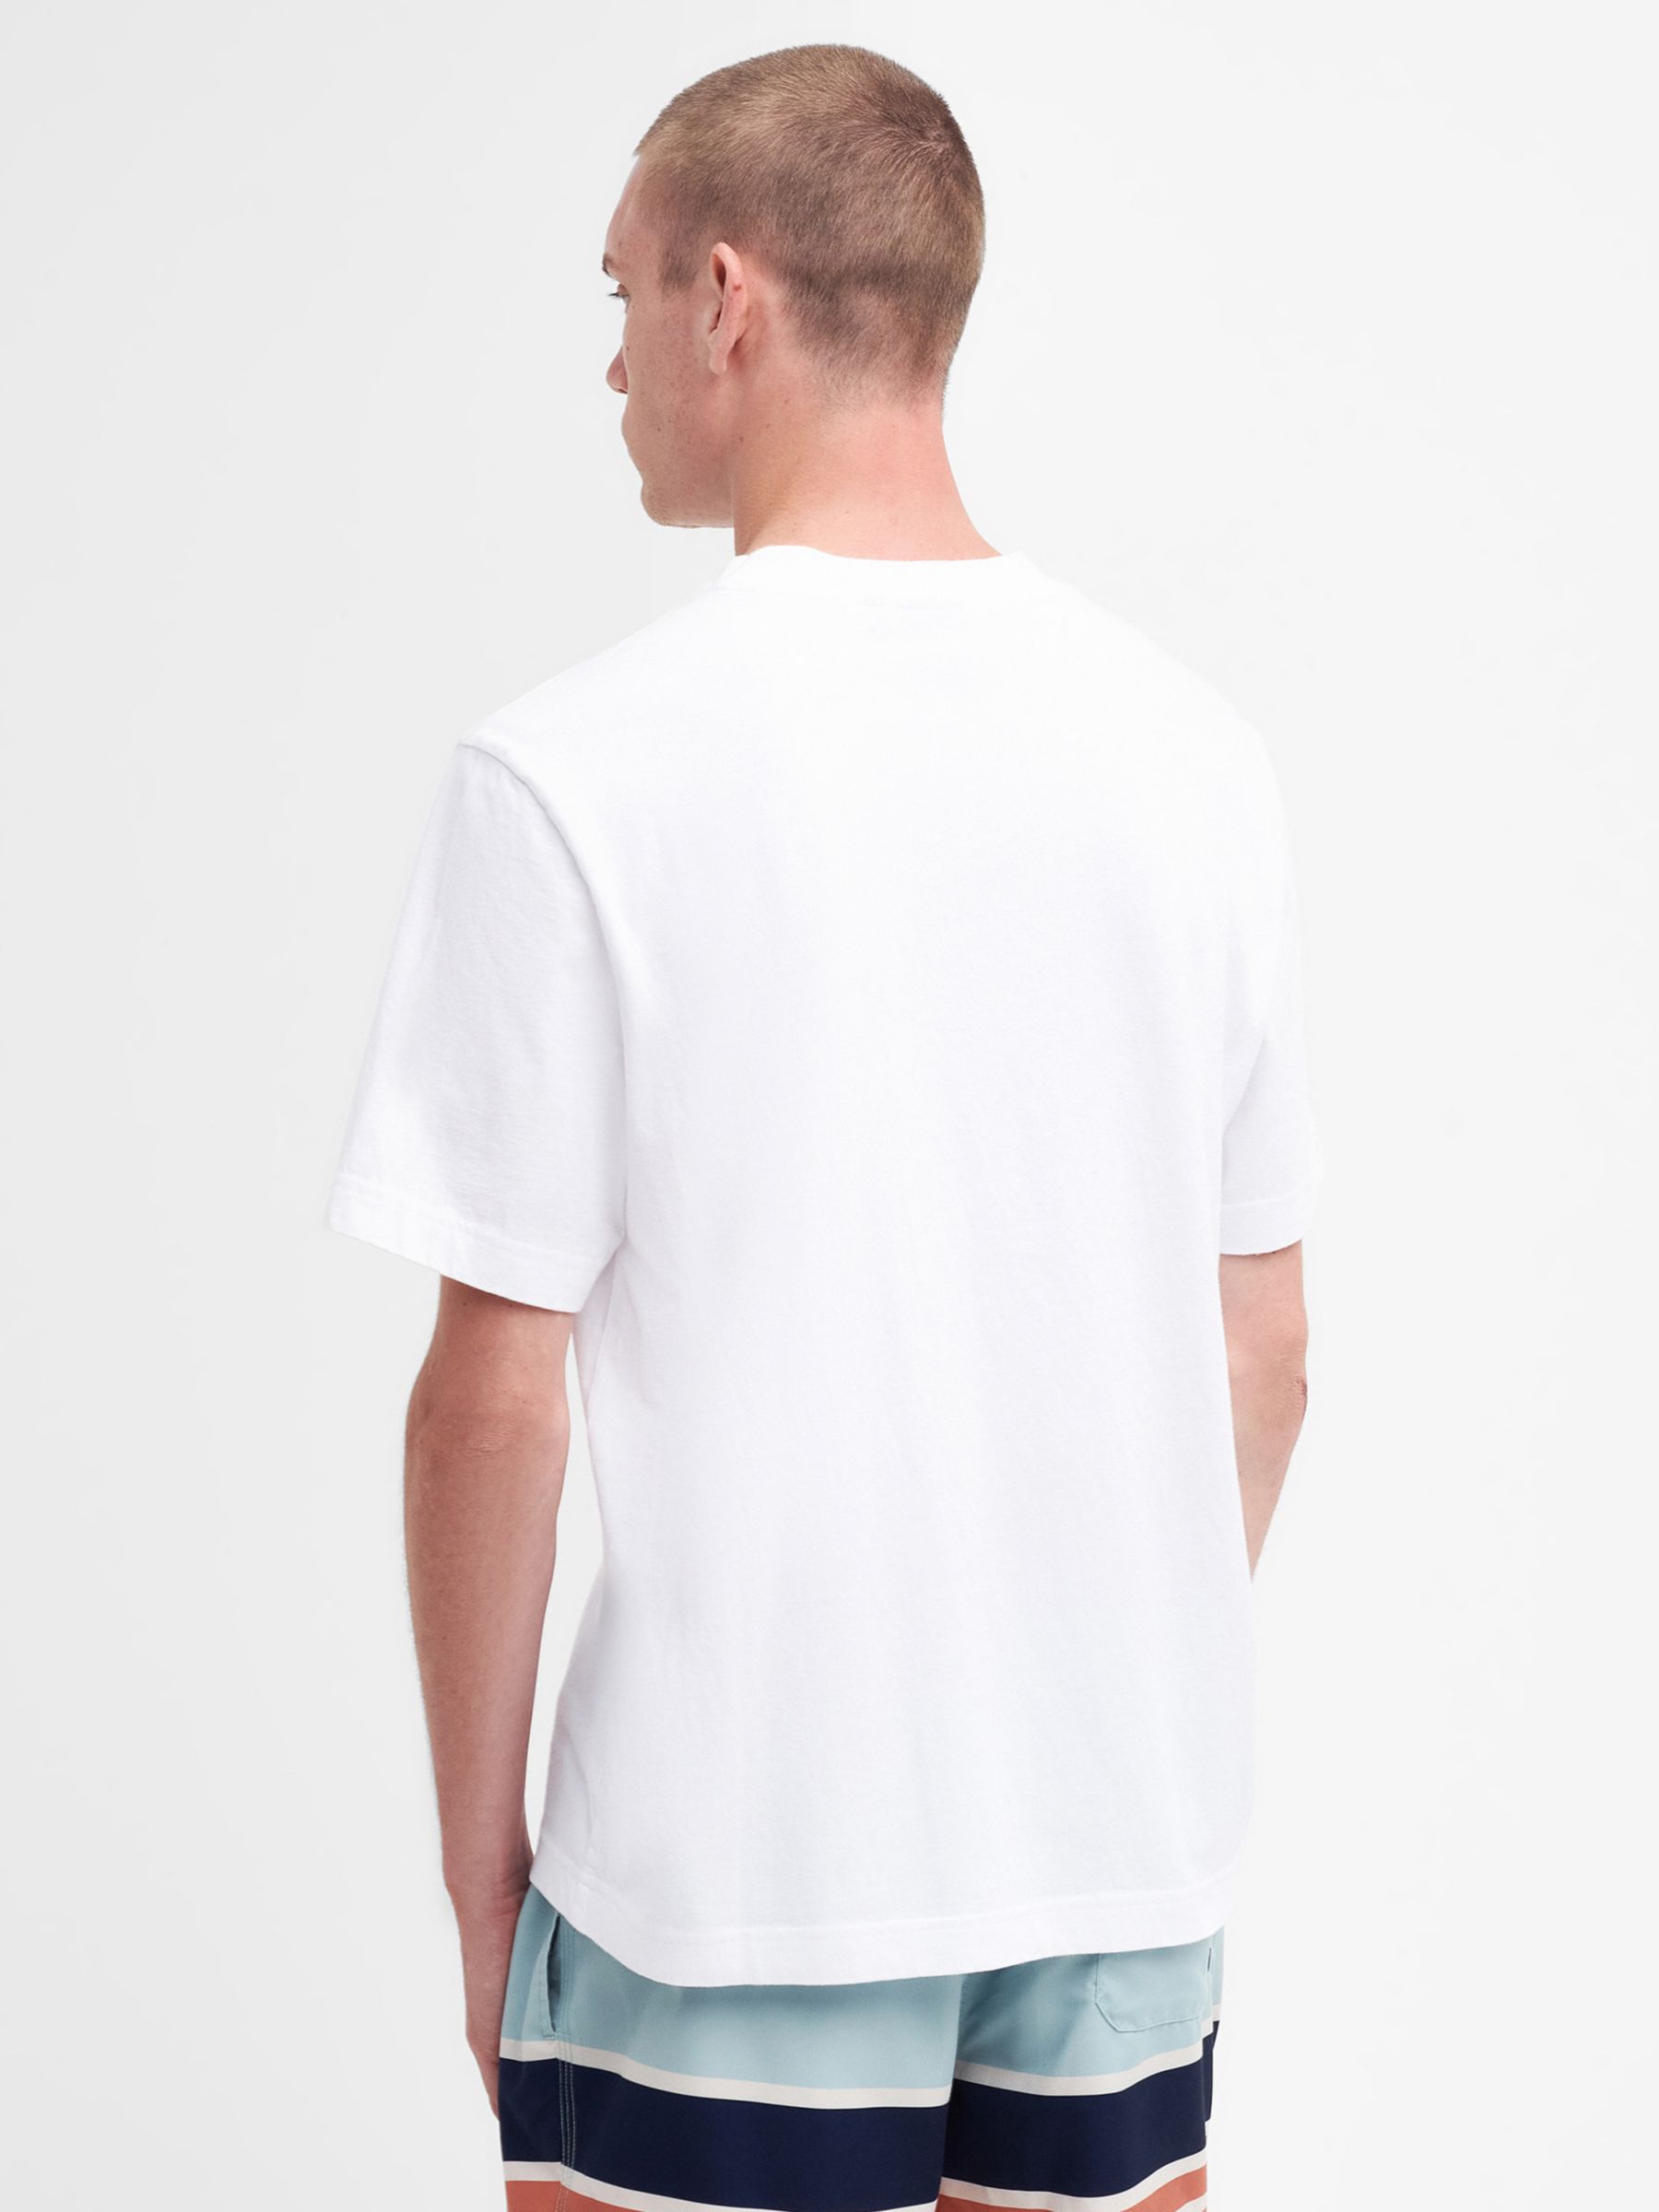 Barbour International Radley T-Shirt, White, S